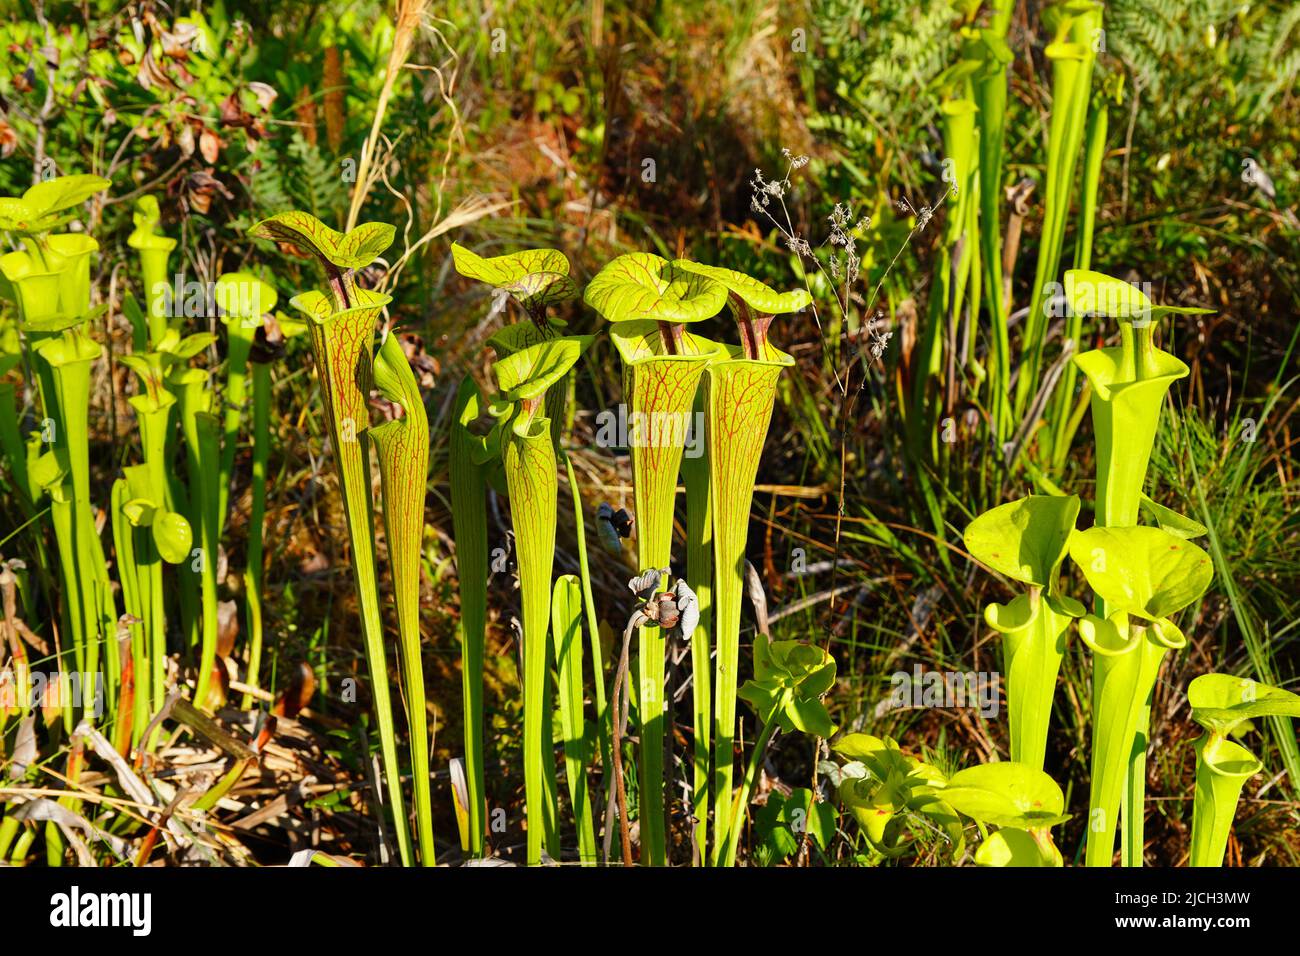 Plante de Pitcher jaune, Sarracenia flava, une plante carnivore qui piège et digère les insectes dans ses feuilles ressemblant à un pichet. Banque D'Images